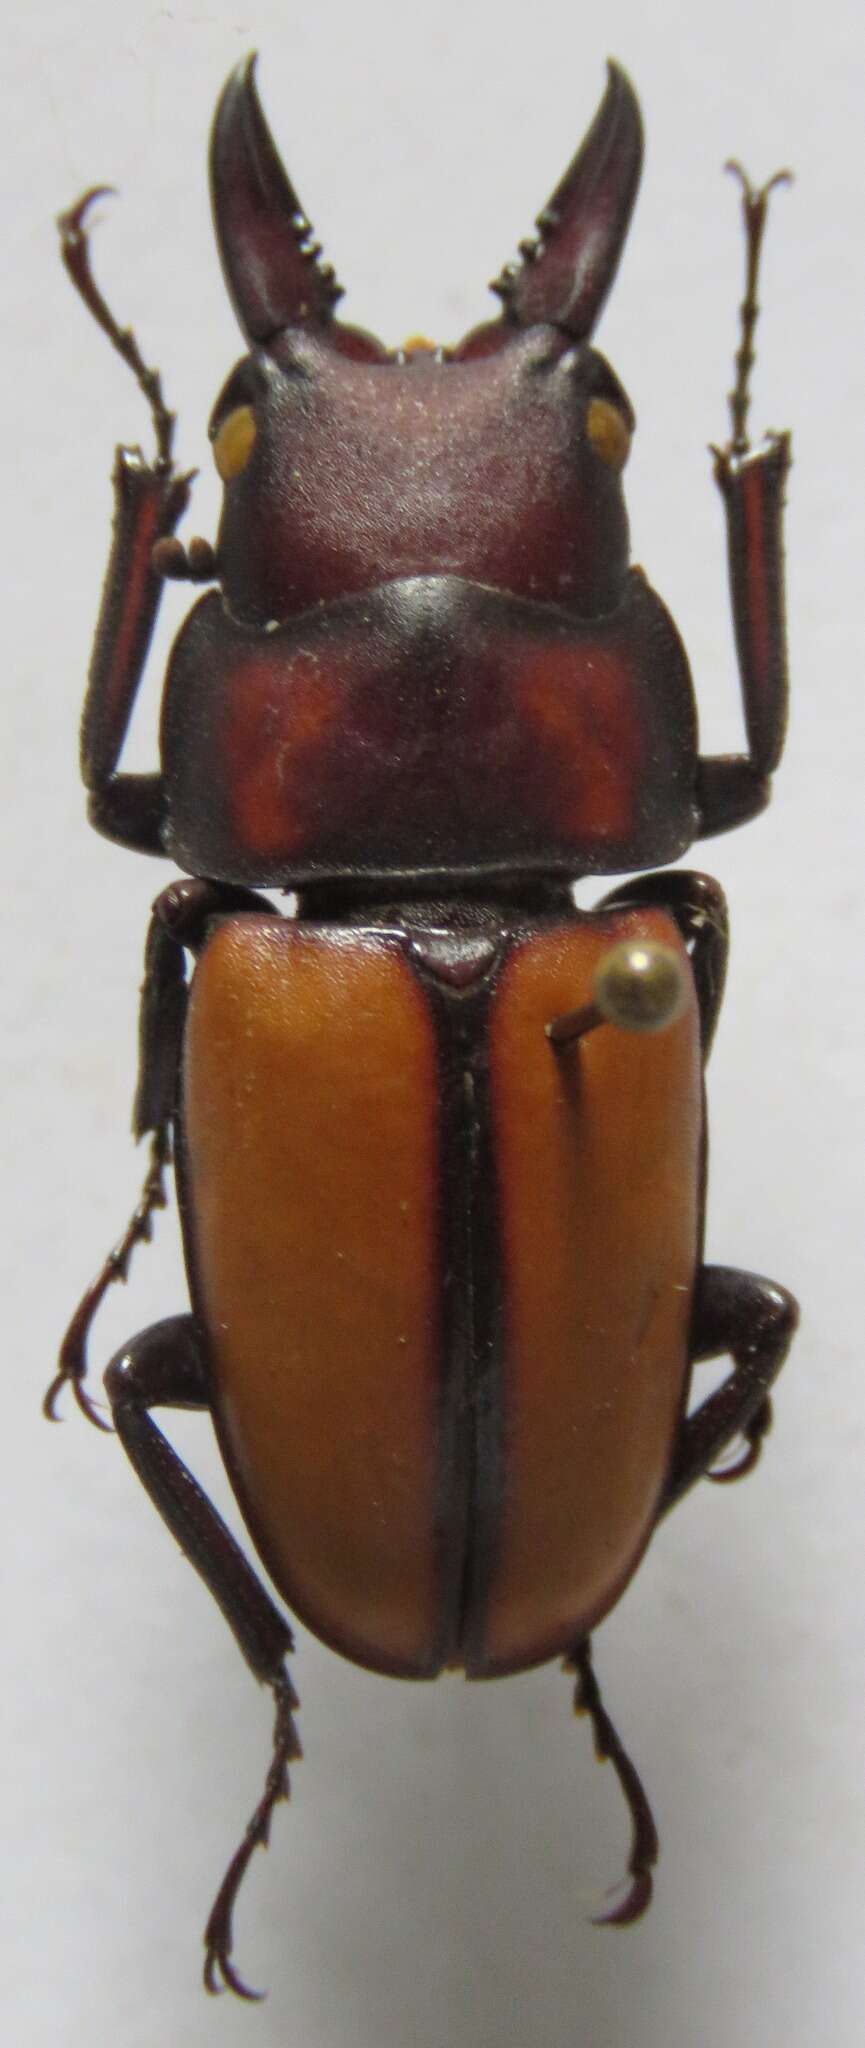 Image of Prosopocoilus (Hoplitocranum) doris Kriesche 1920